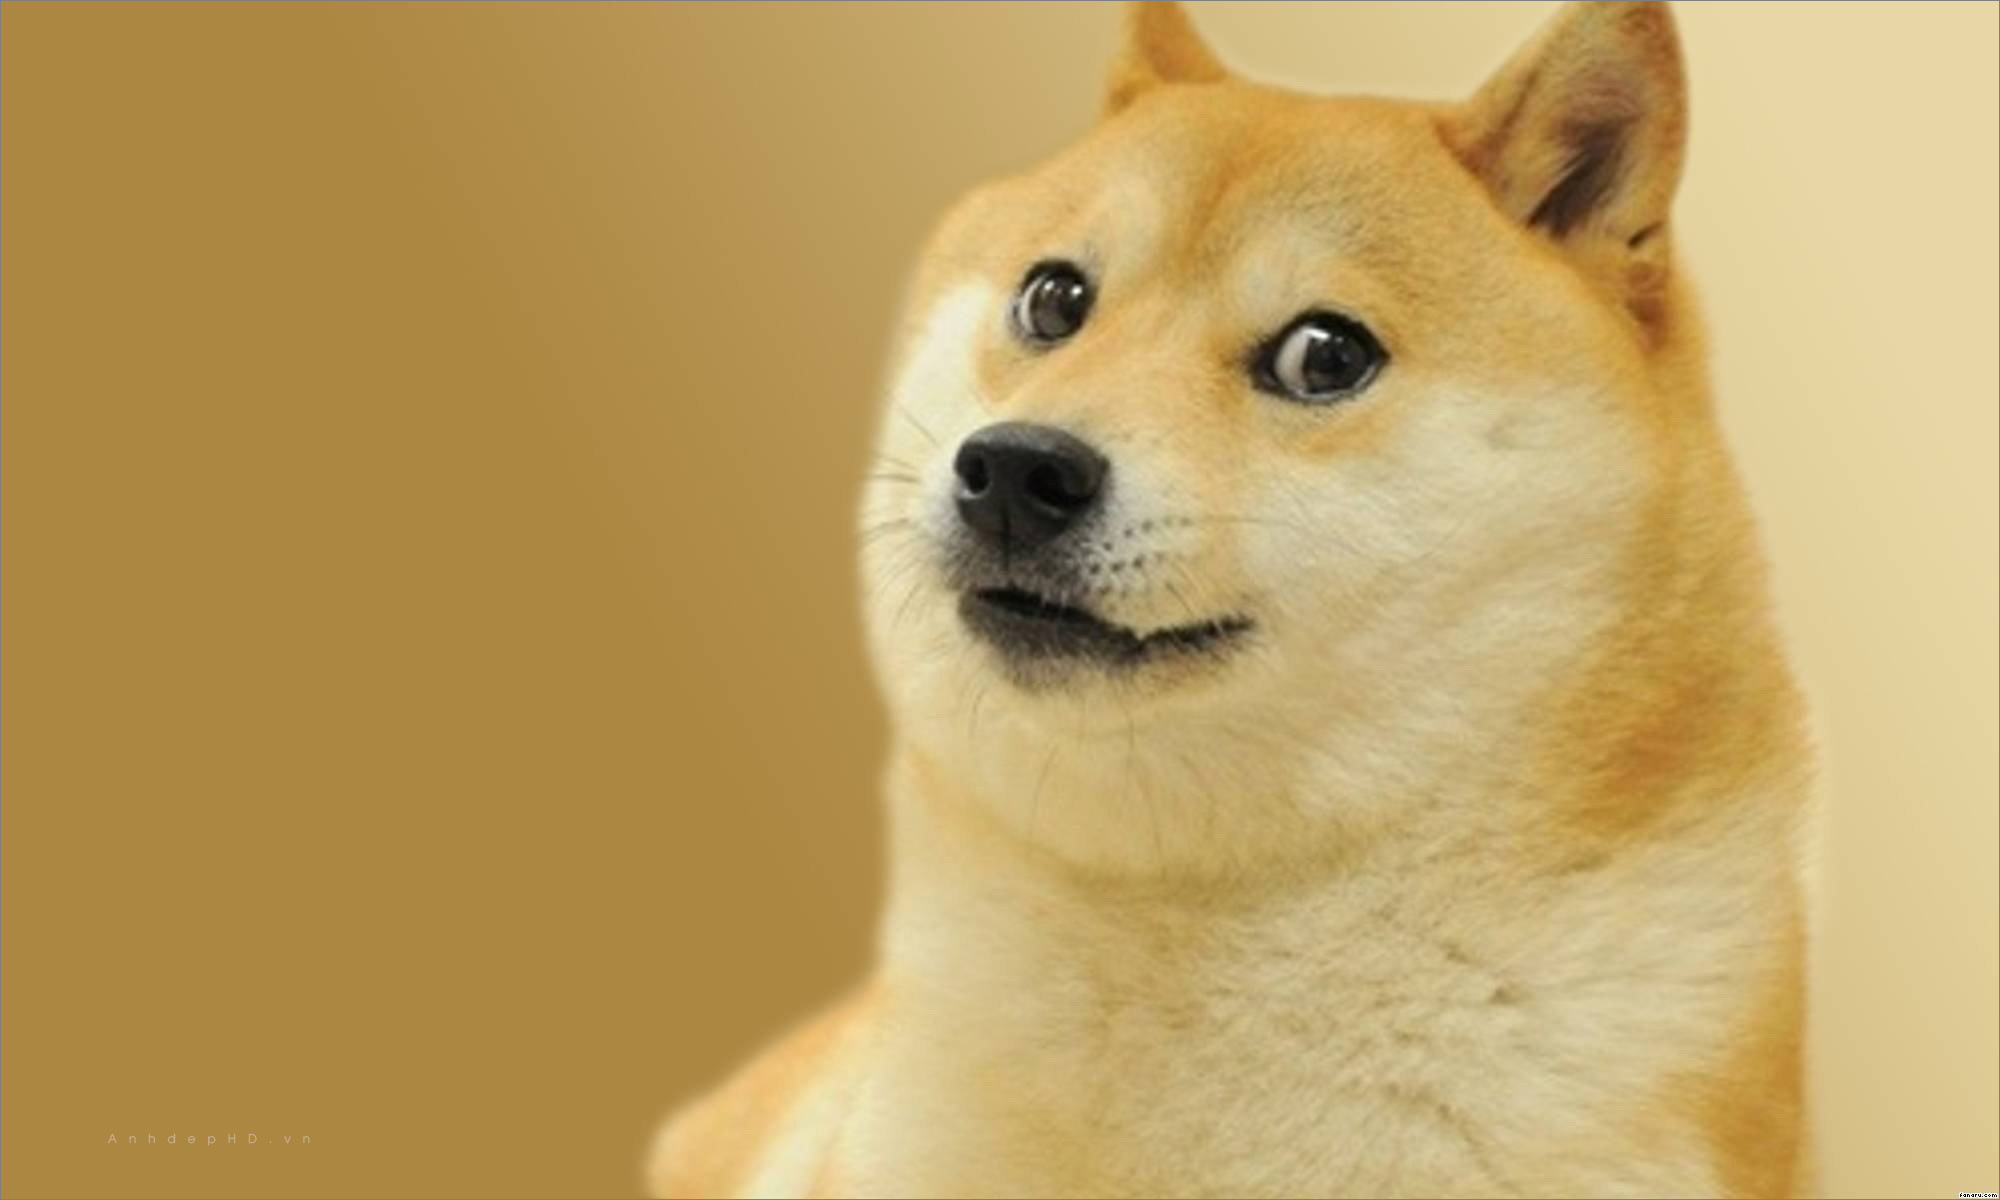 Tận hưởng vẻ đẹp dễ thương của chú chó Shiba qua những hình ảnh đáng yêu nhất!